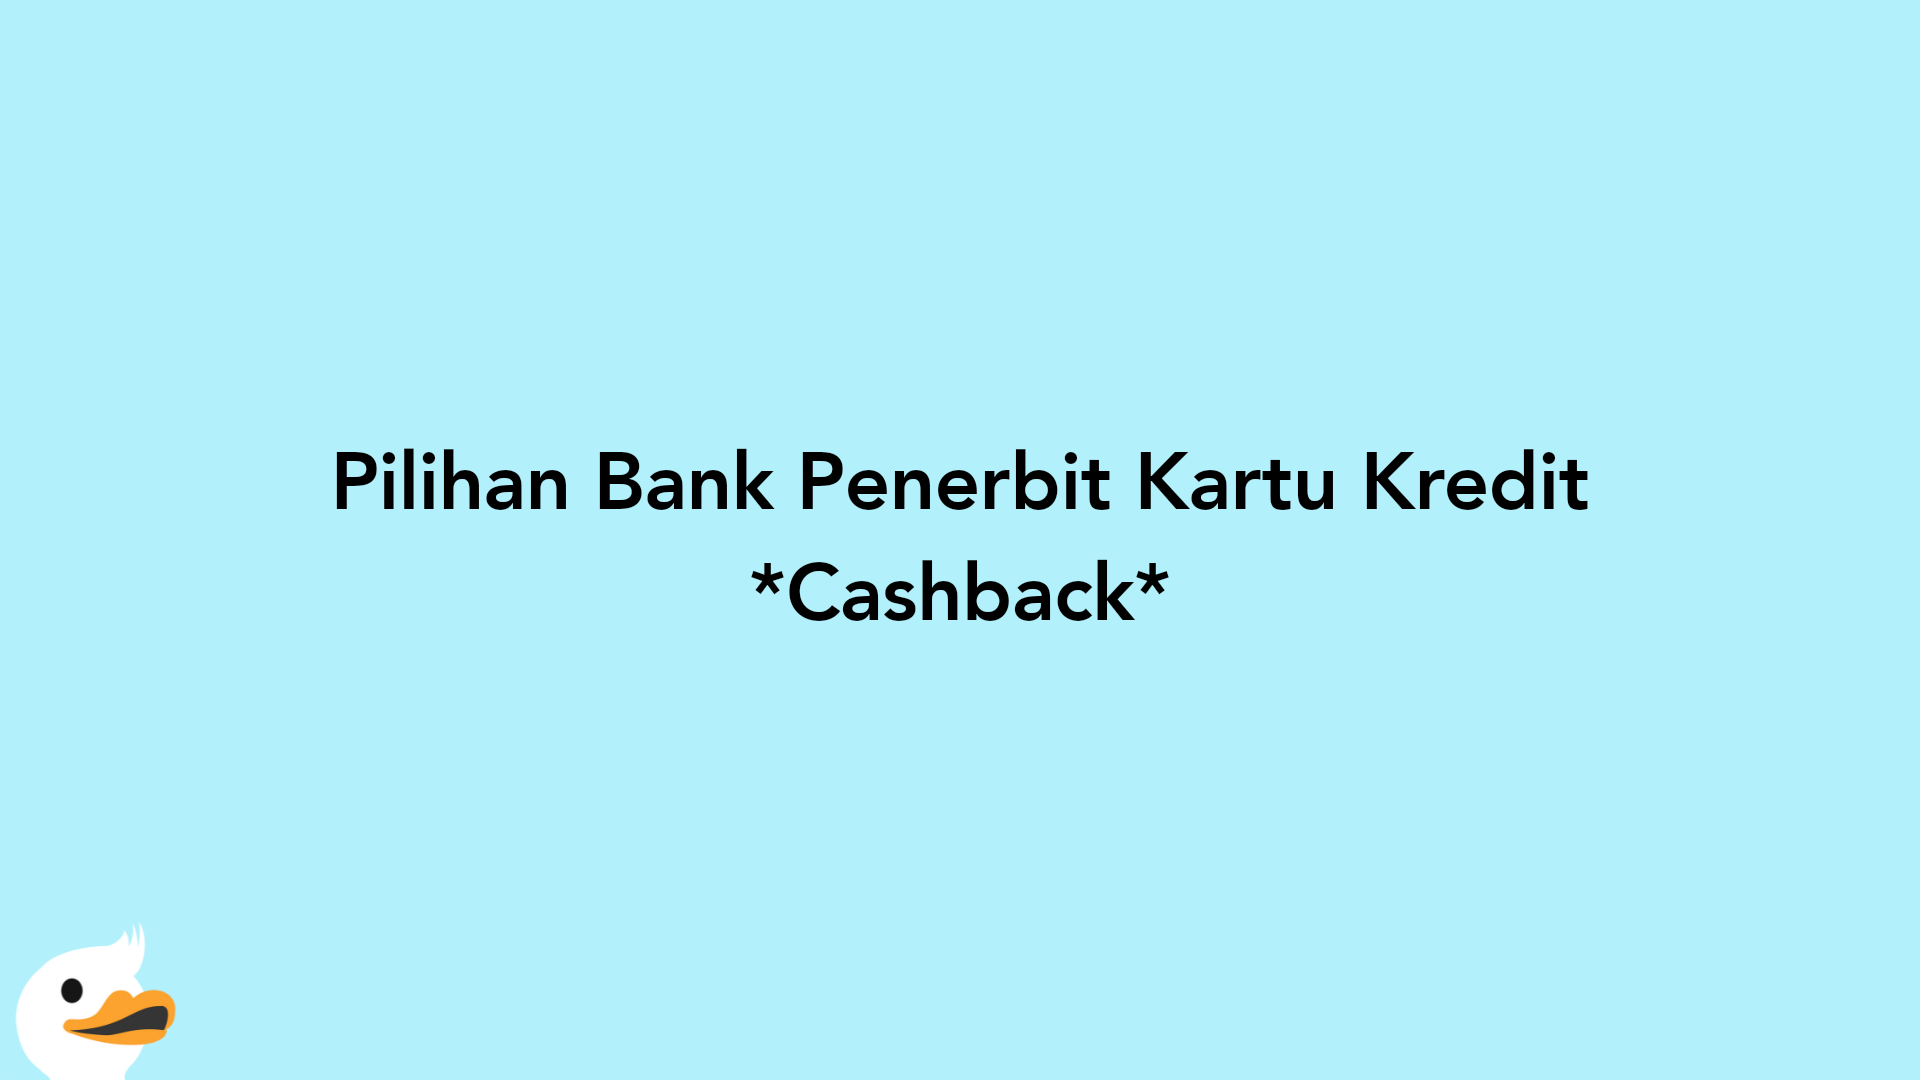 Pilihan Bank Penerbit Kartu Kredit Cashback